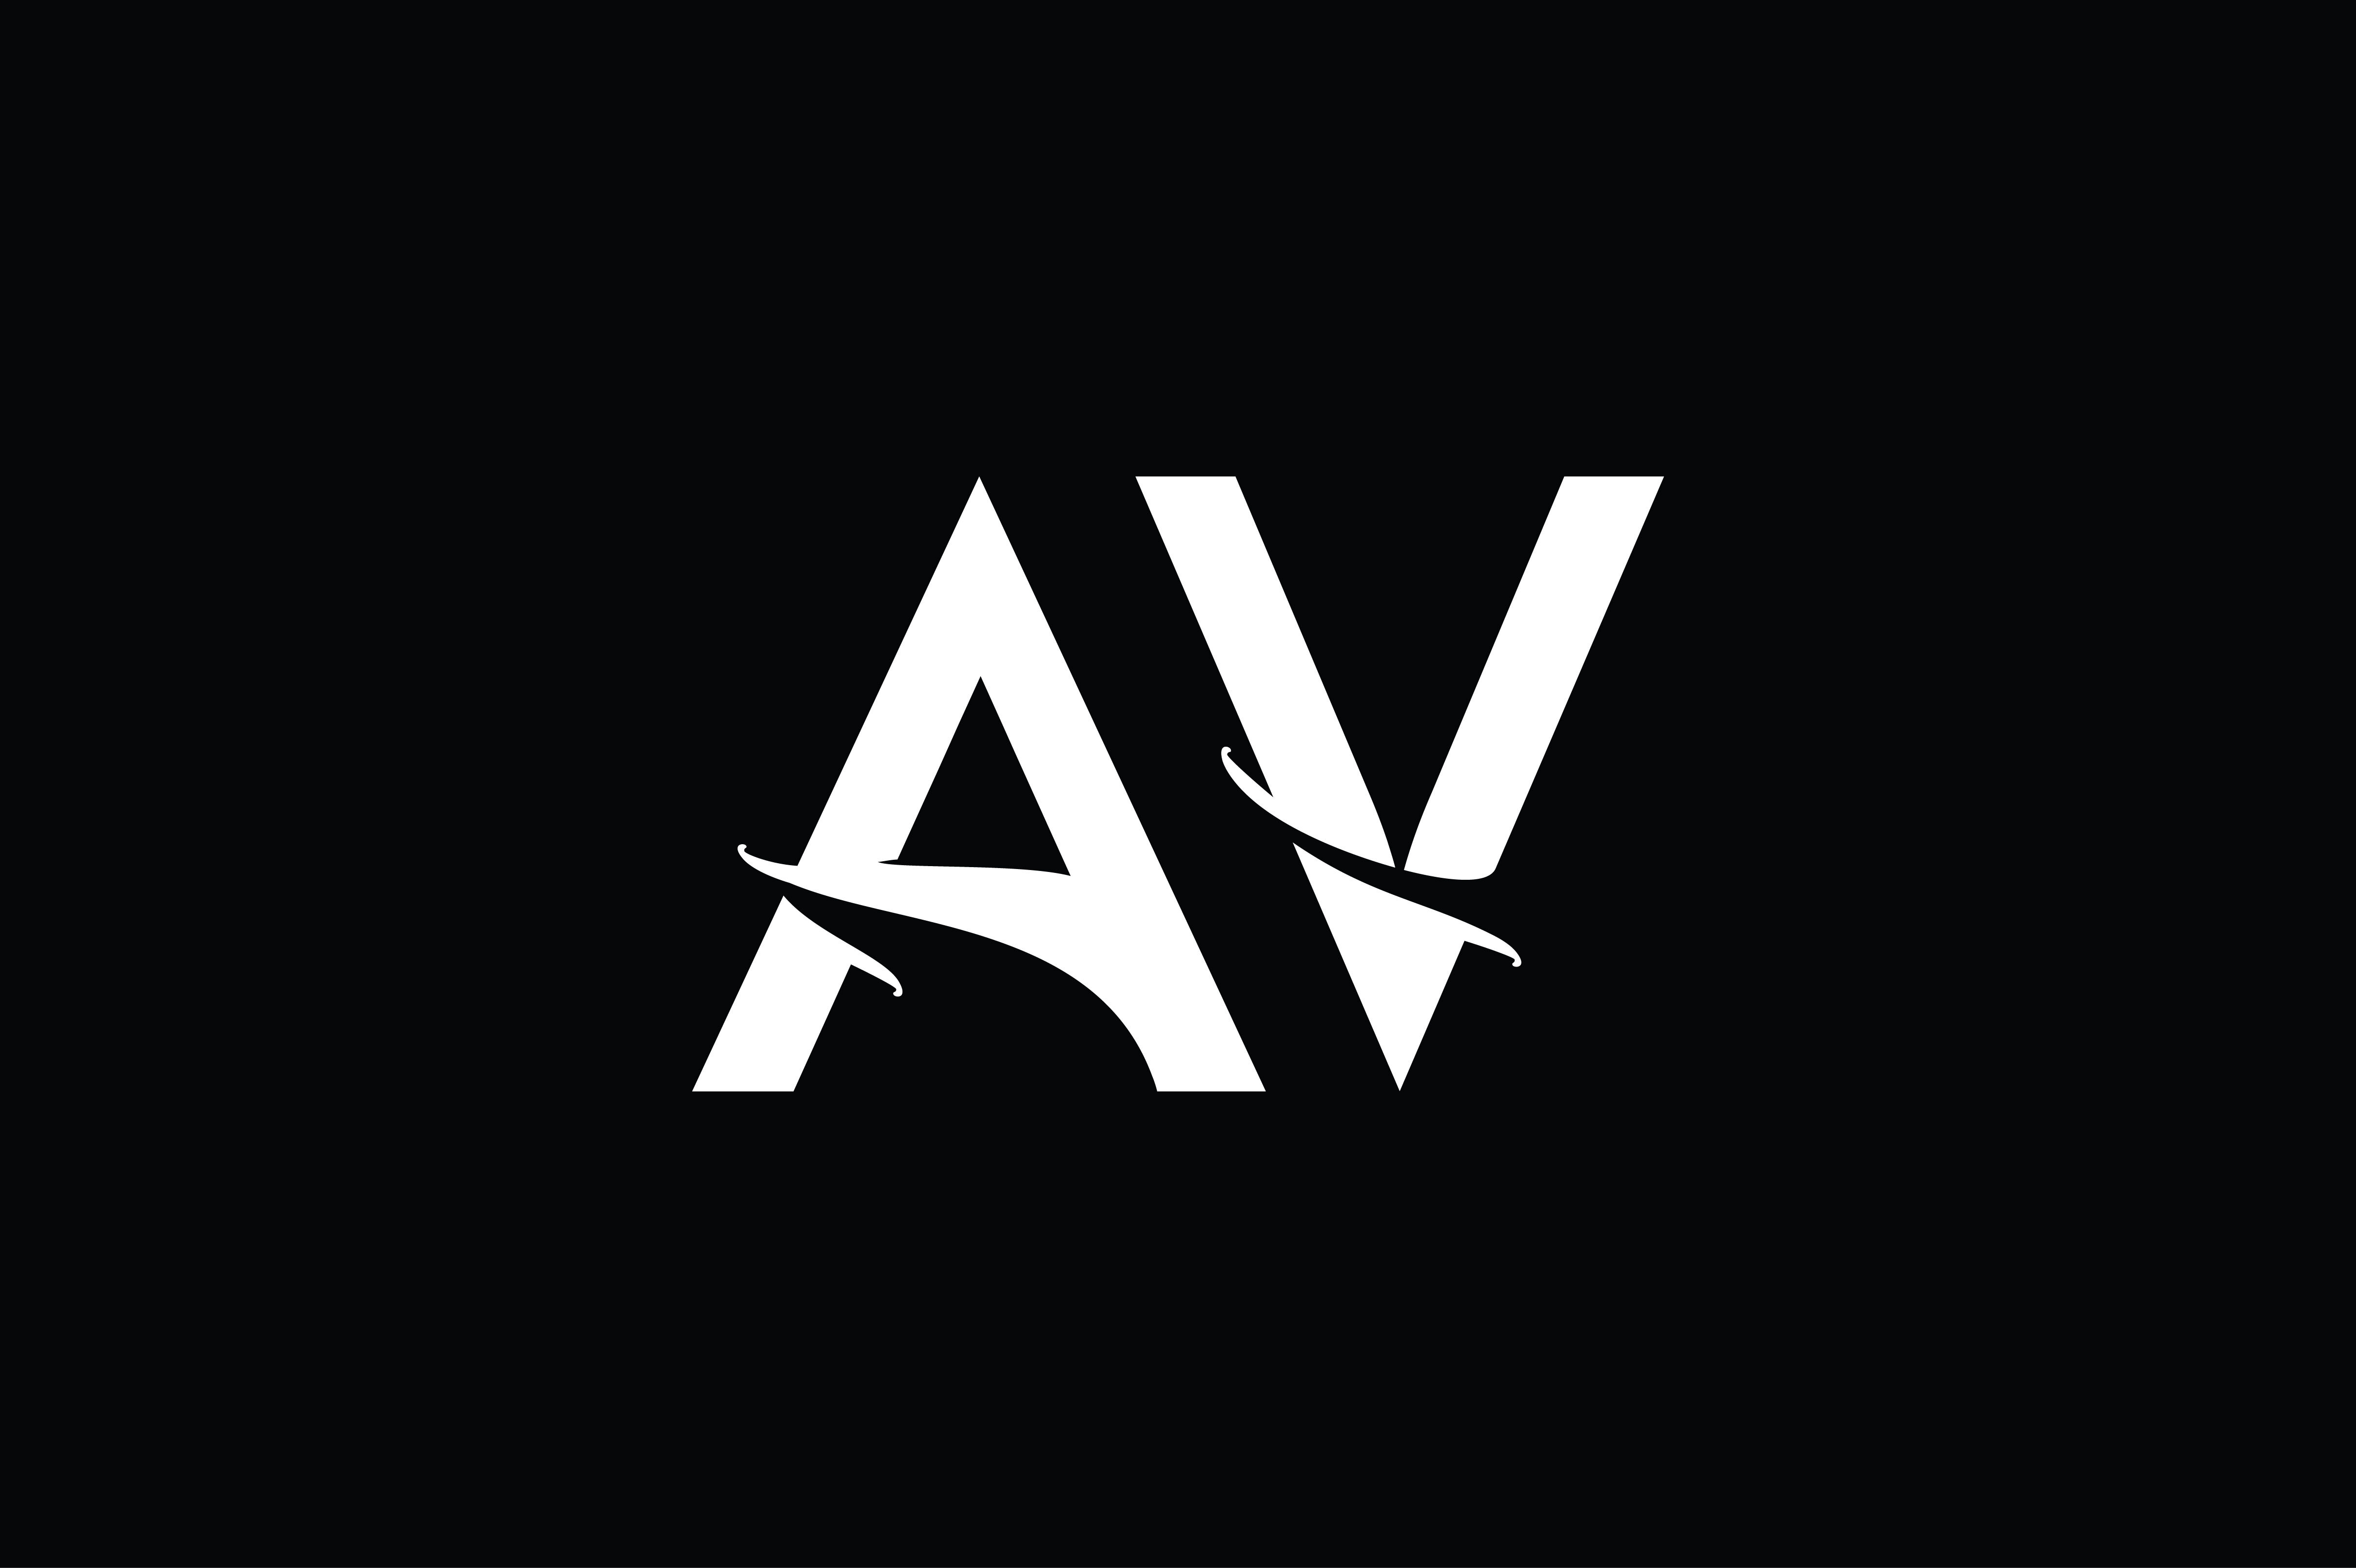 AV logo by LKP-Design on DeviantArt